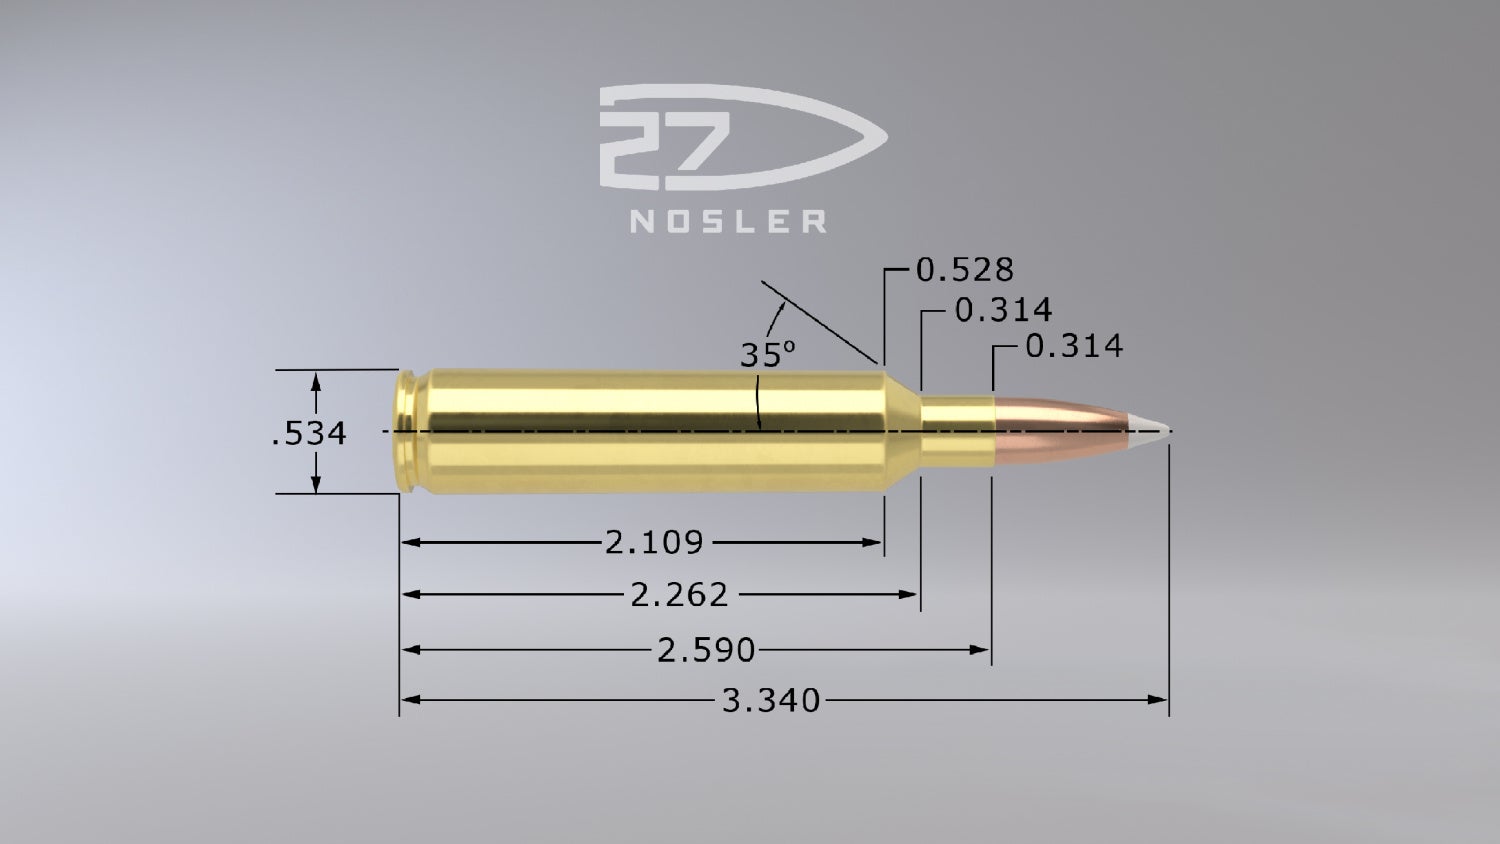 [SHOT 2020] New 27 Nosler Cartridge (3)